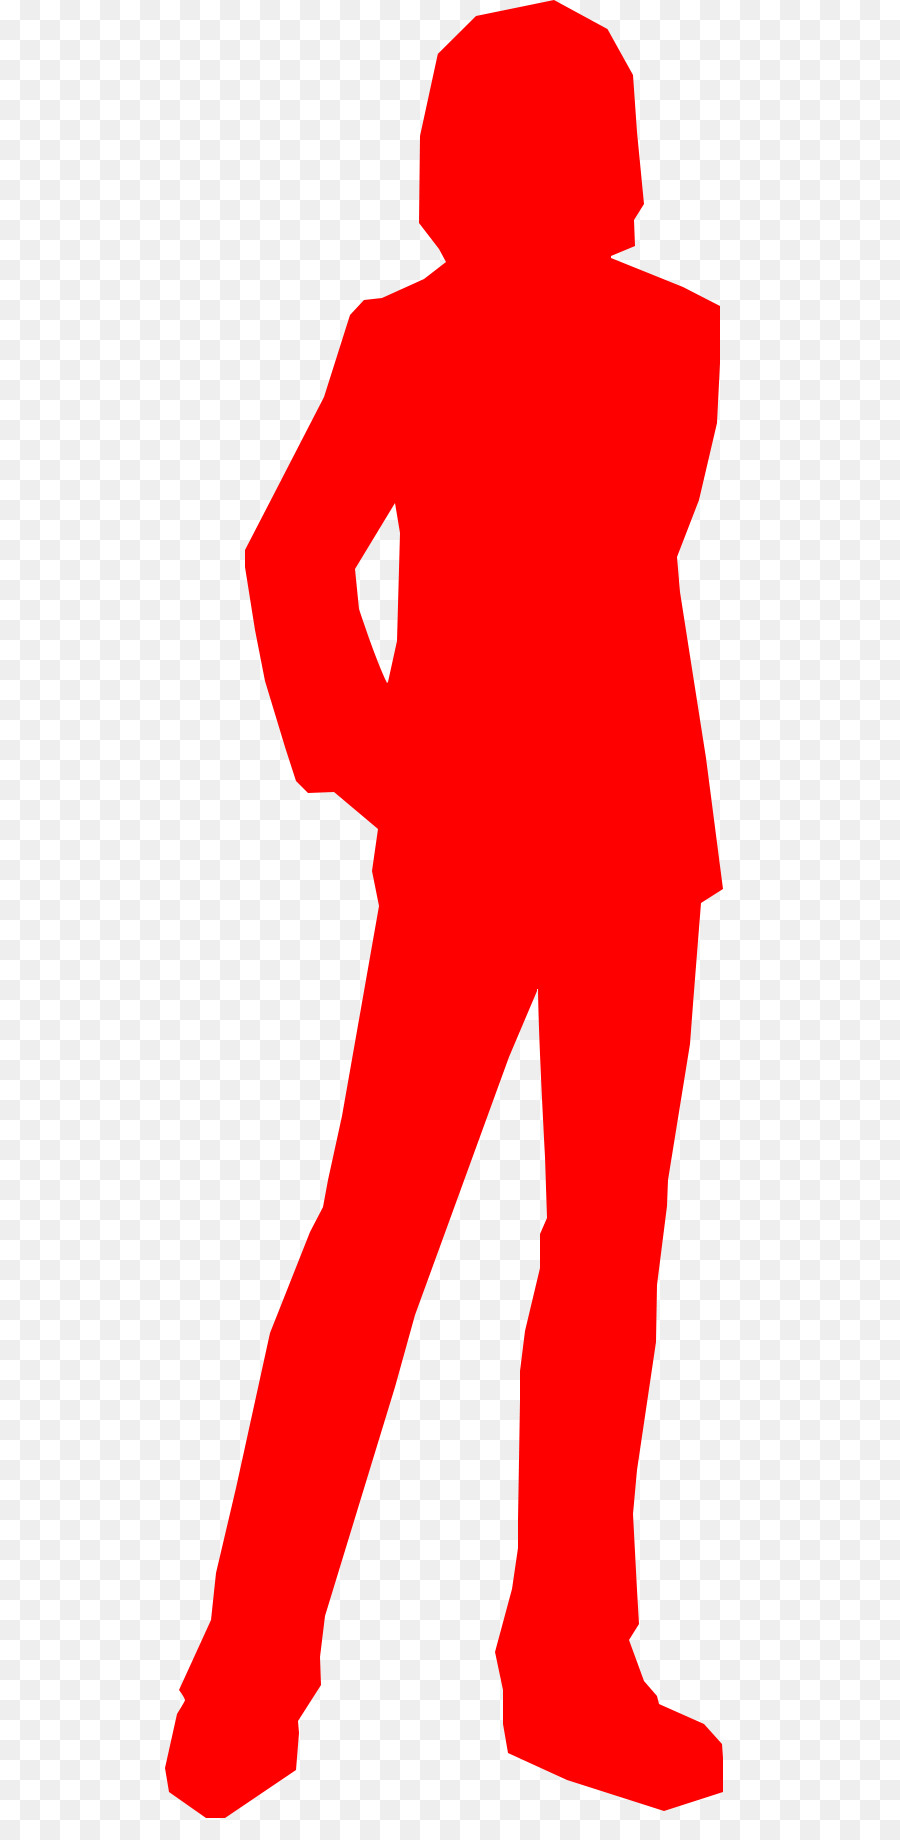 person silhouette clip art red